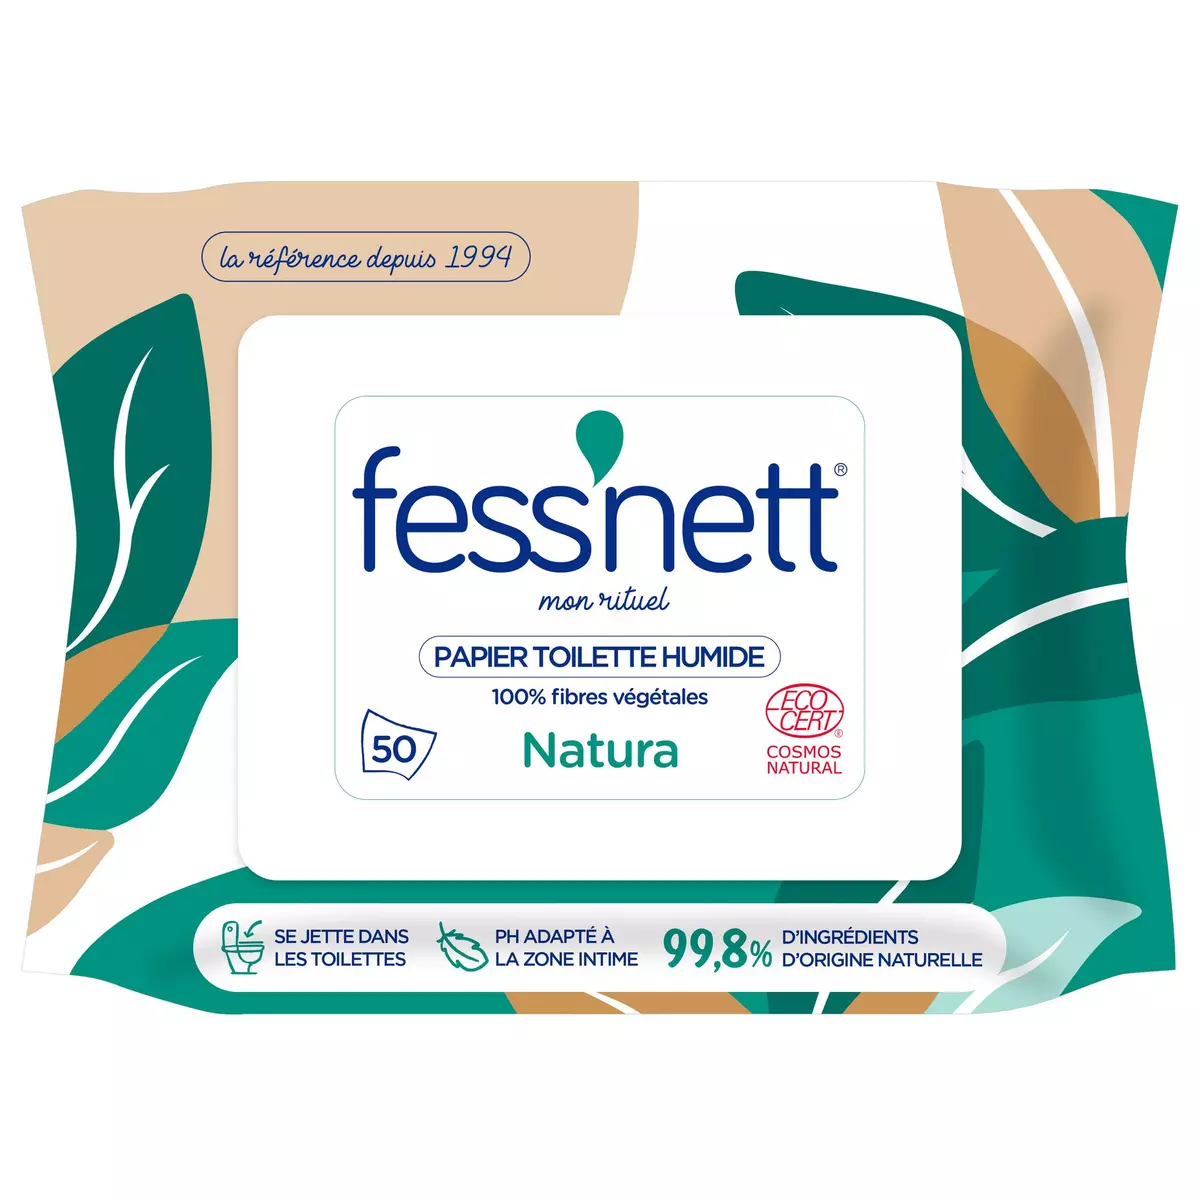 FESS'NETT Lingettes papier toilette humide blanc hypoallergénique 50 lingettes 